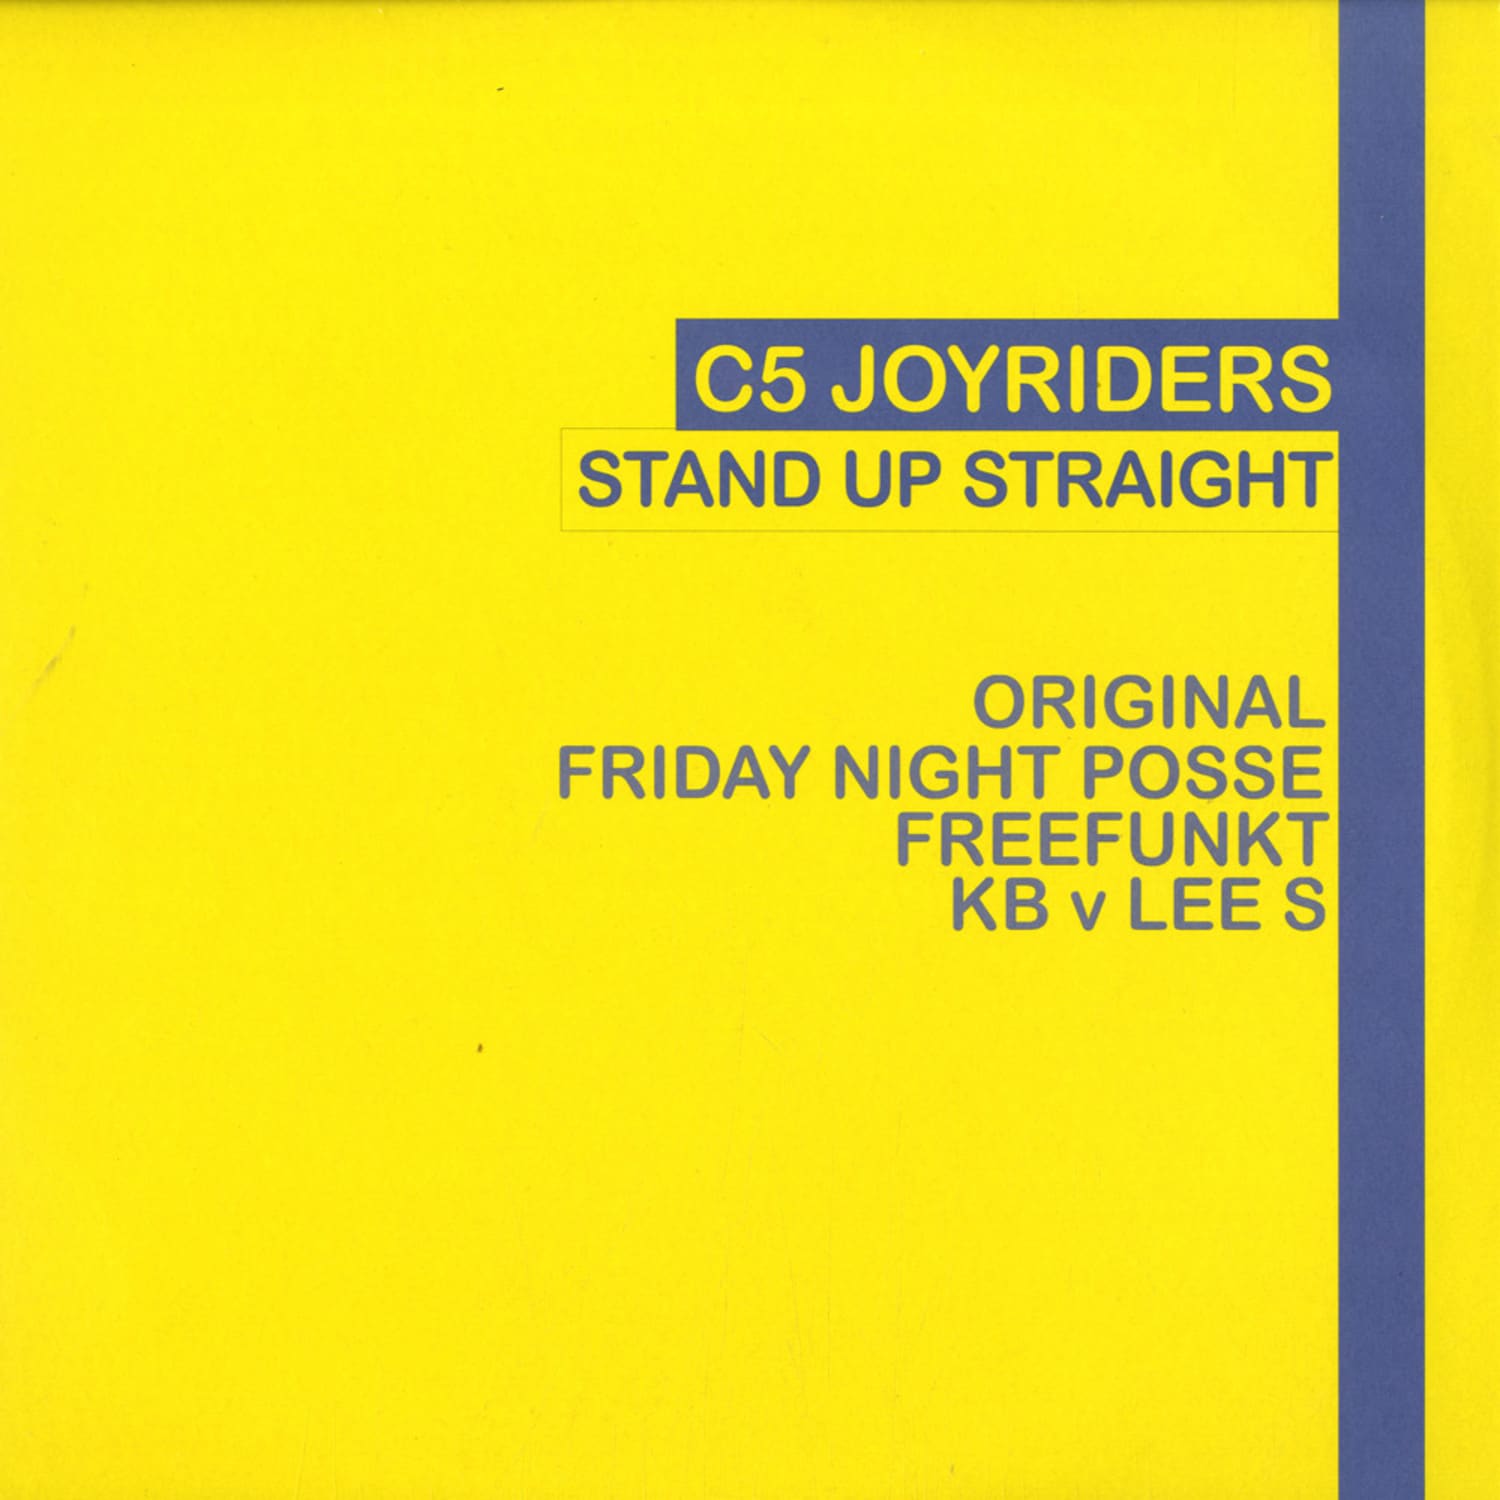 C5 Joyriders - STAND UP STRAIGHT 